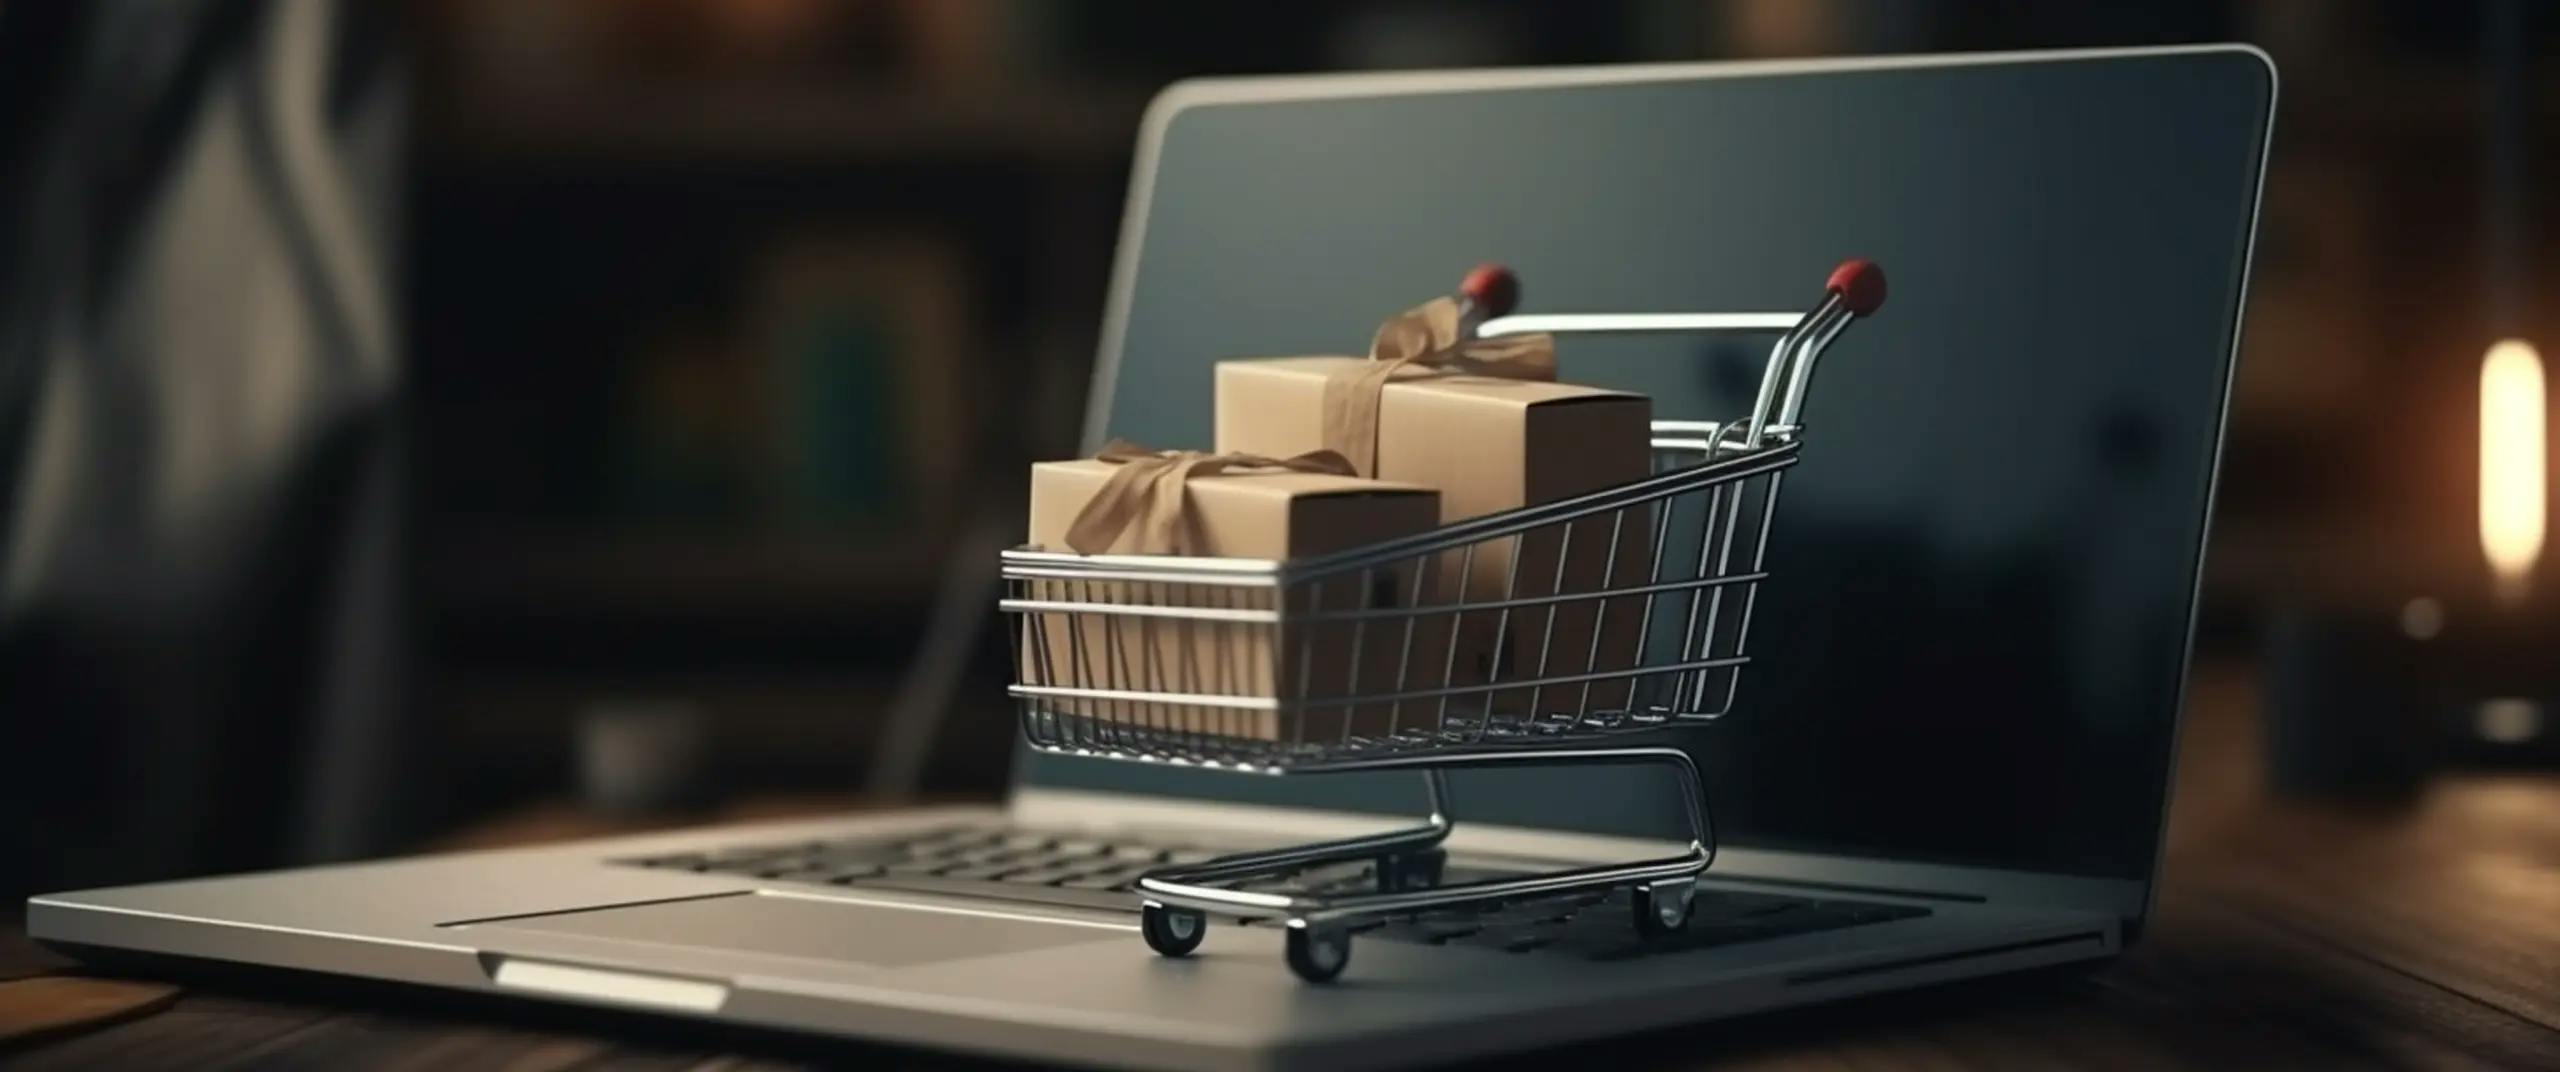 Na imagem, um carrinho de compras está sobre um notebook, simbolizando o serviço de comércio eletrônico